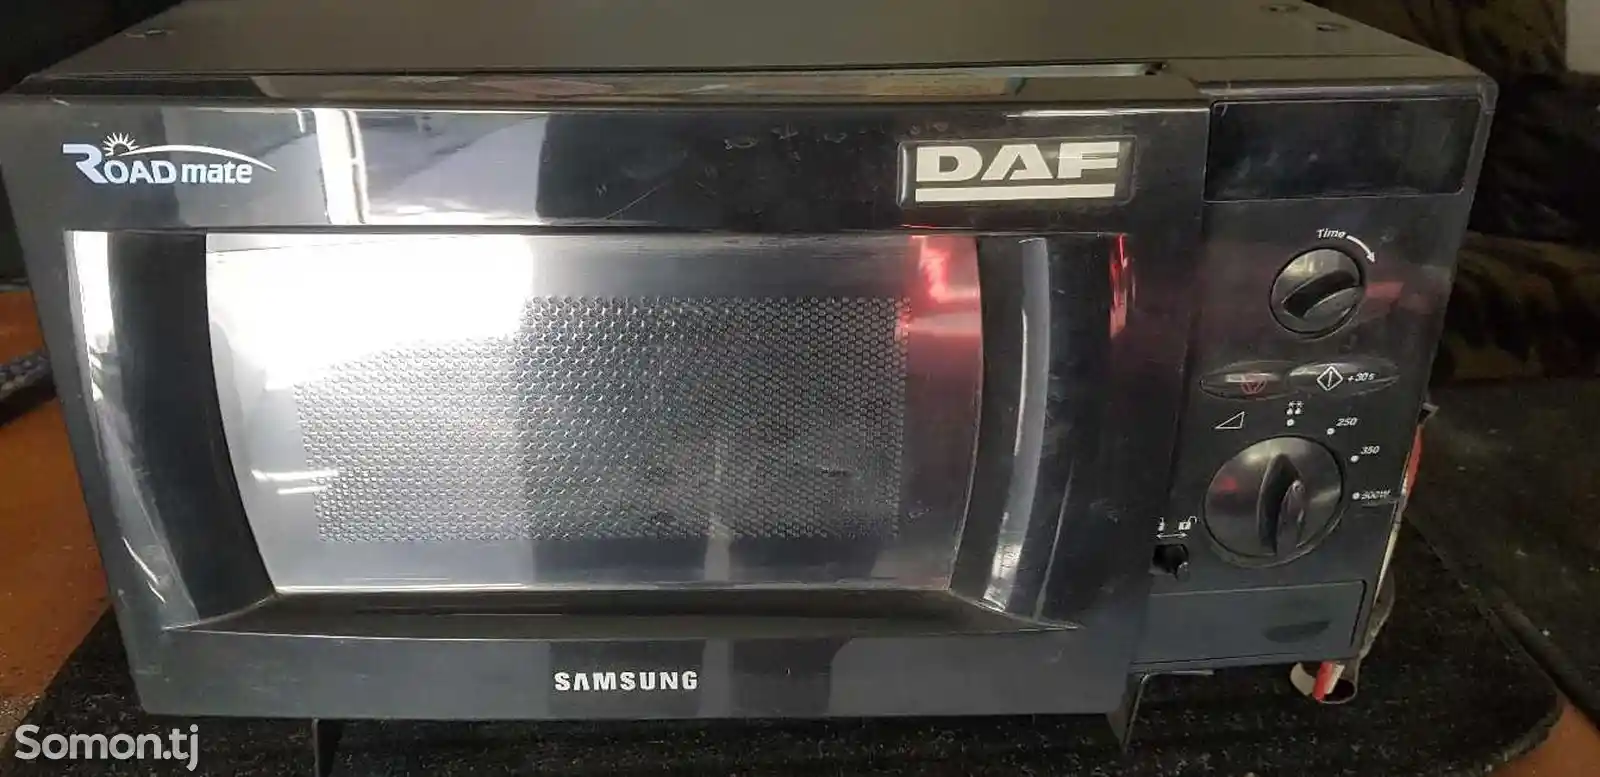 Автомобильная микроволновая печь Daf-1